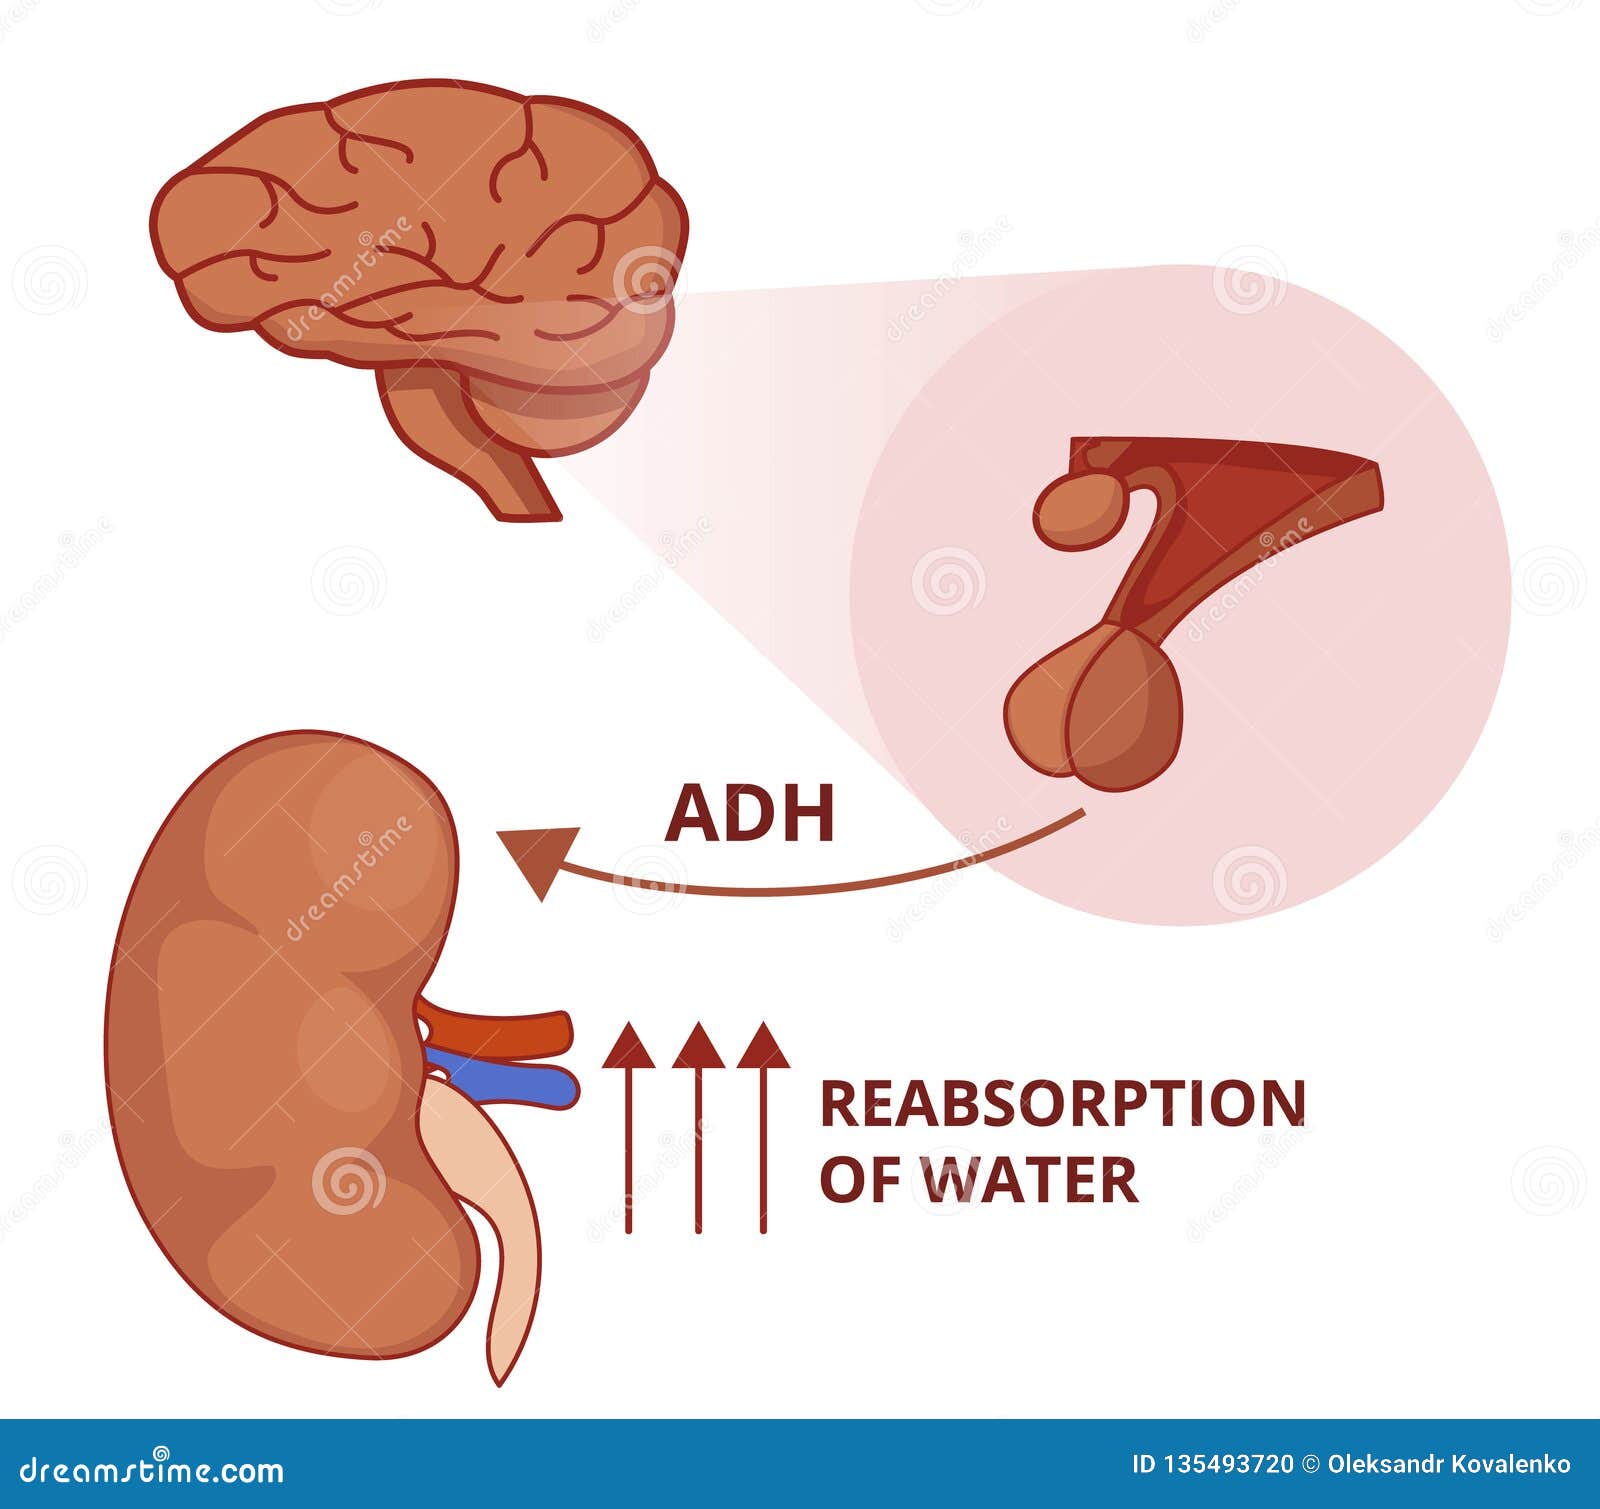 adh hormone function cukorbetegség 2 fok kezelésére emberek jogorvoslatok